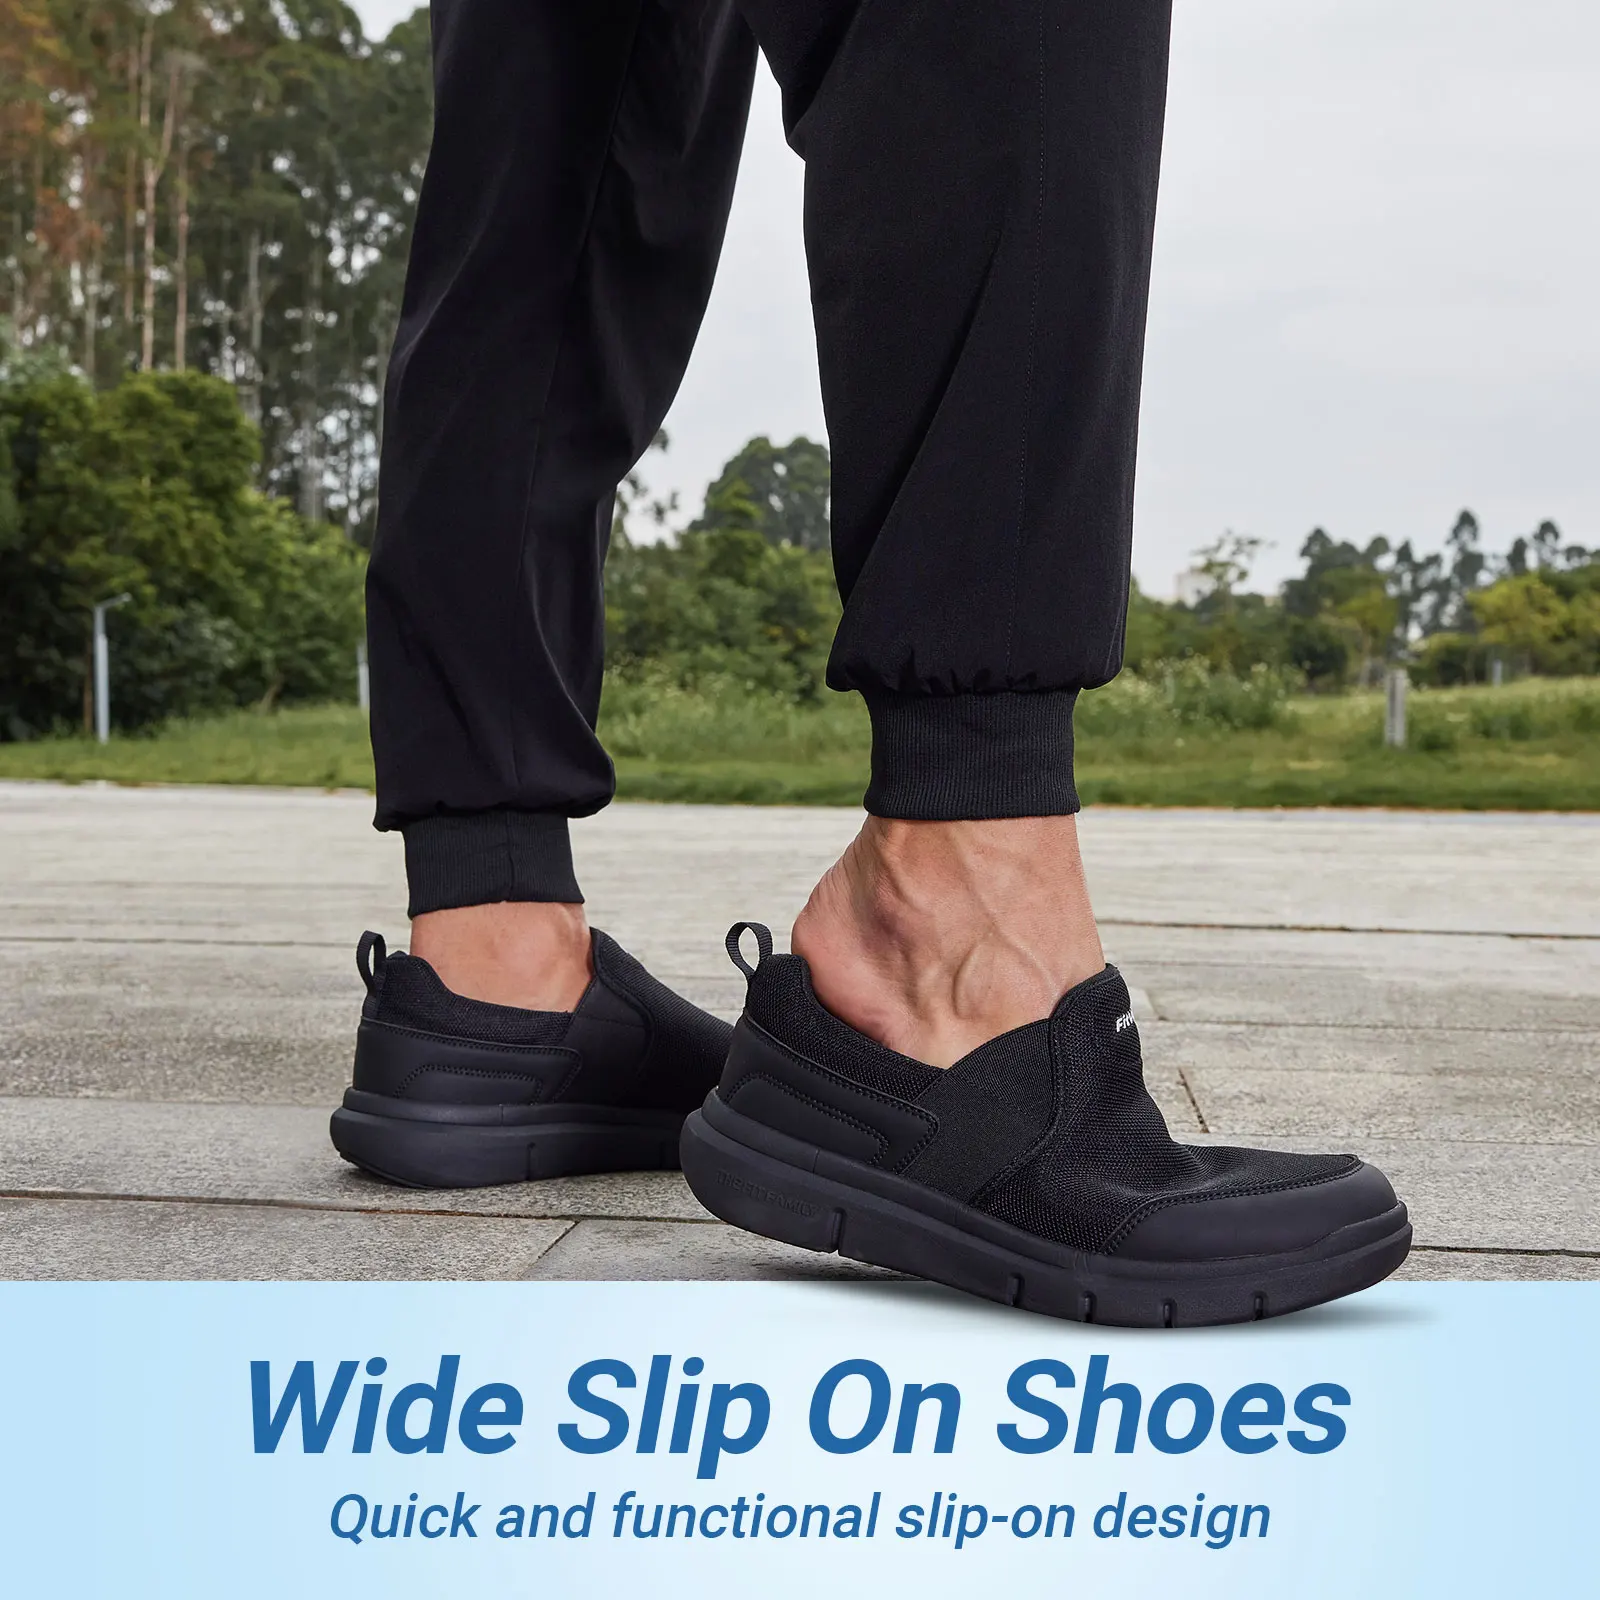 Fitville-أحذية بدون كعب خفيفة الوزن غير رسمية للرجال ، واسعة ، جيدة التهوية ، مناسبة لتورم القدمين ، التهاب اللفافة الأخمصية ، تخفيف آلام القدم